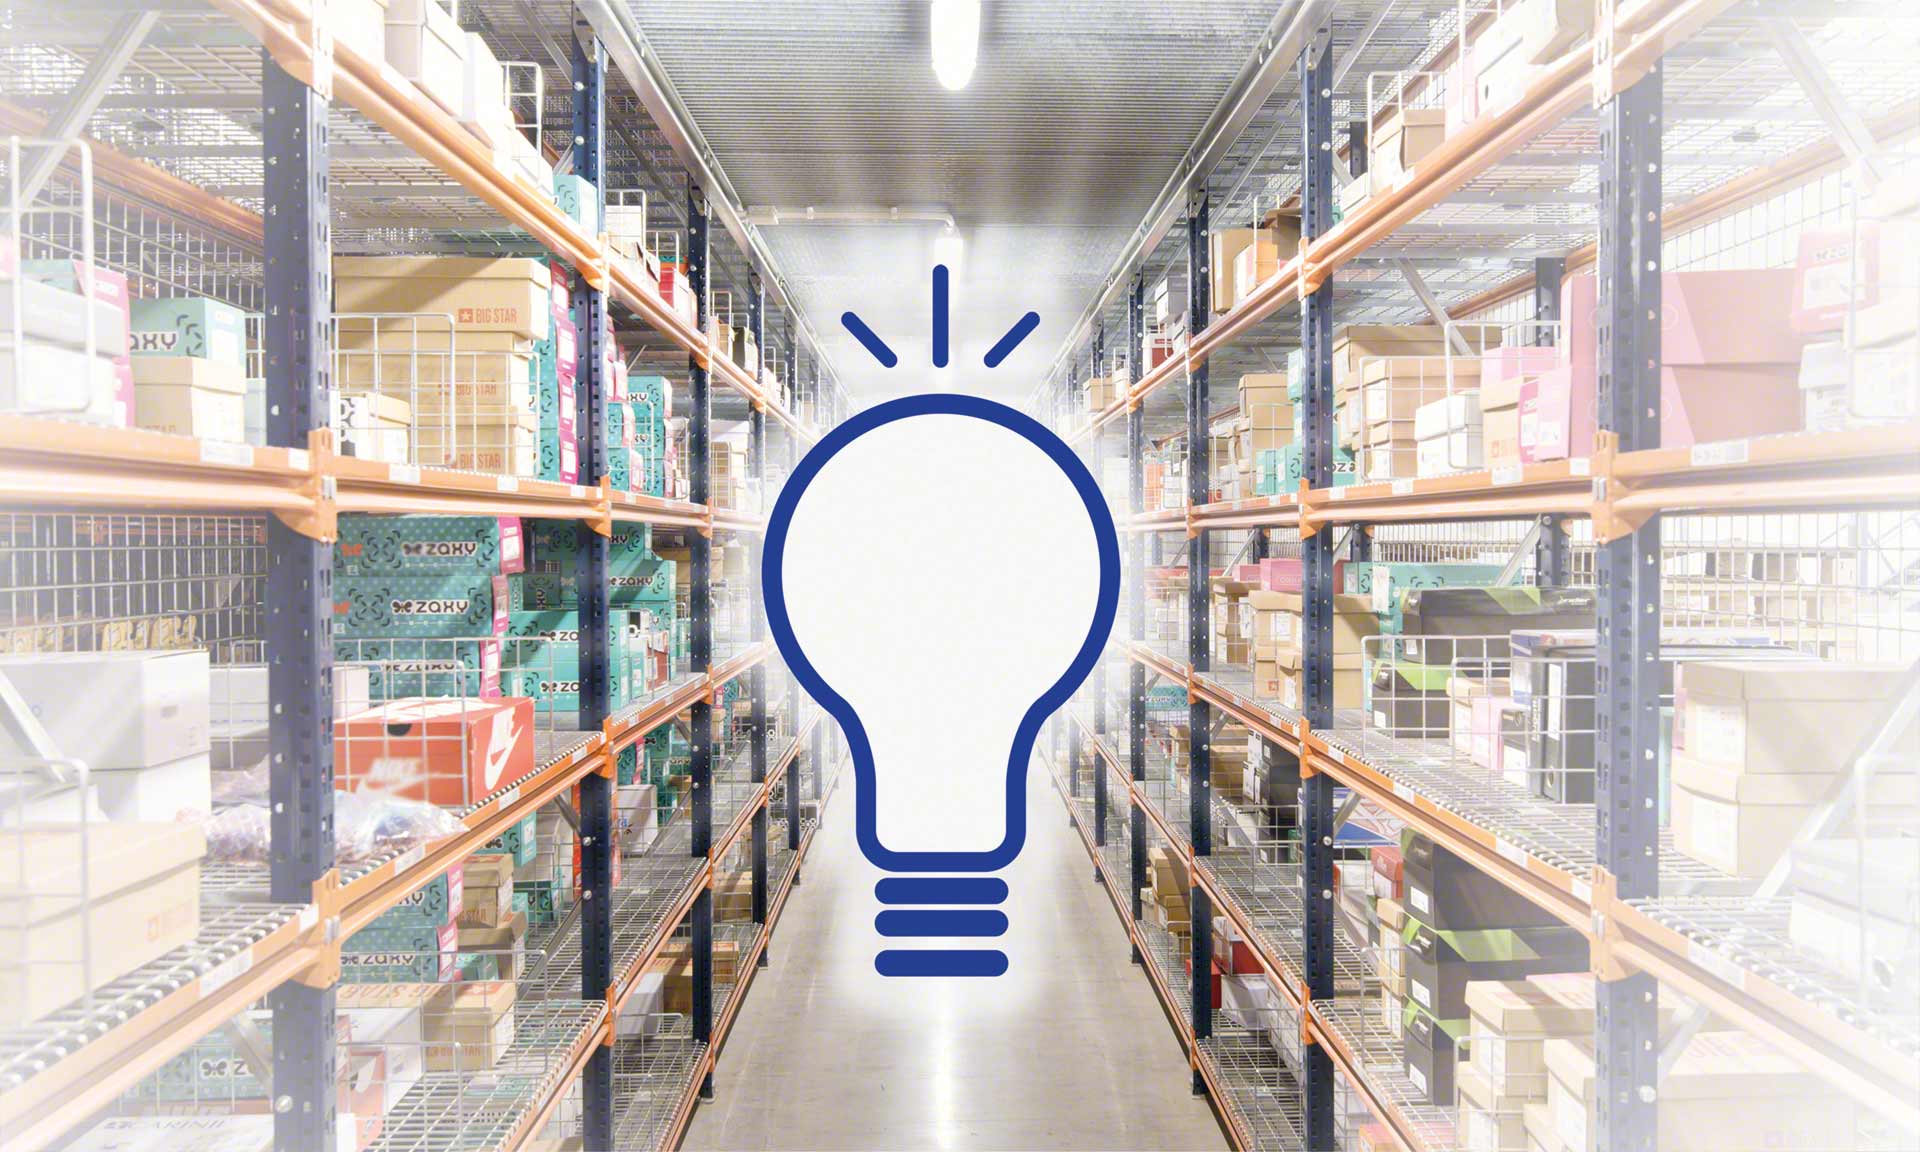 Iluminación en almacenes: una cuestión de productividad, seguridad y ahorro